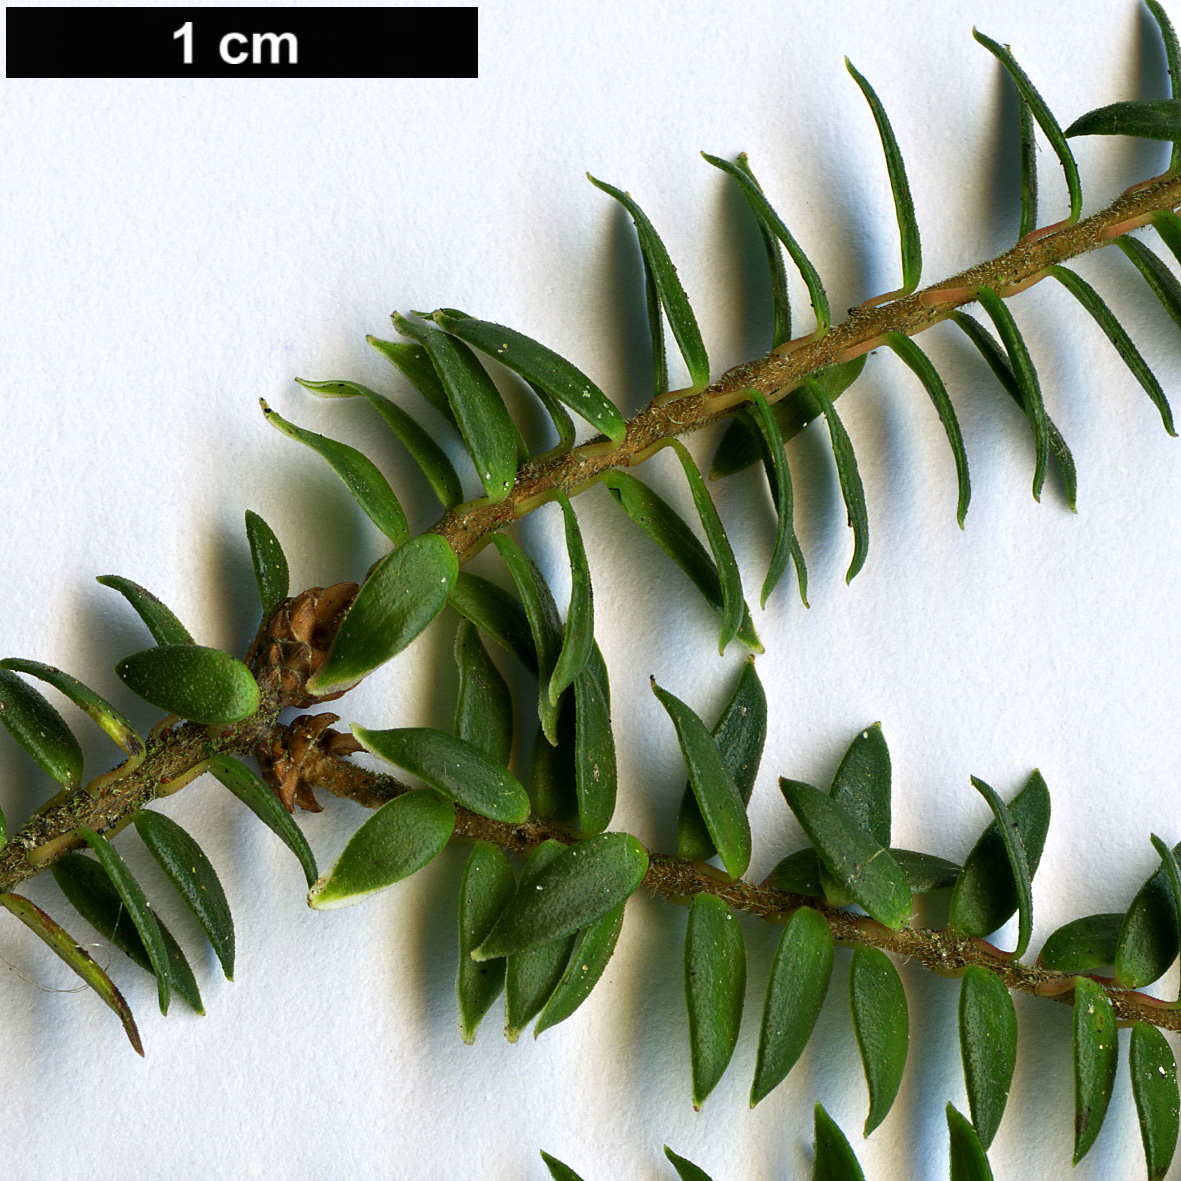 High resolution image: Family: Ericaceae - Genus: Trochocarpa - Taxon: thymifolia